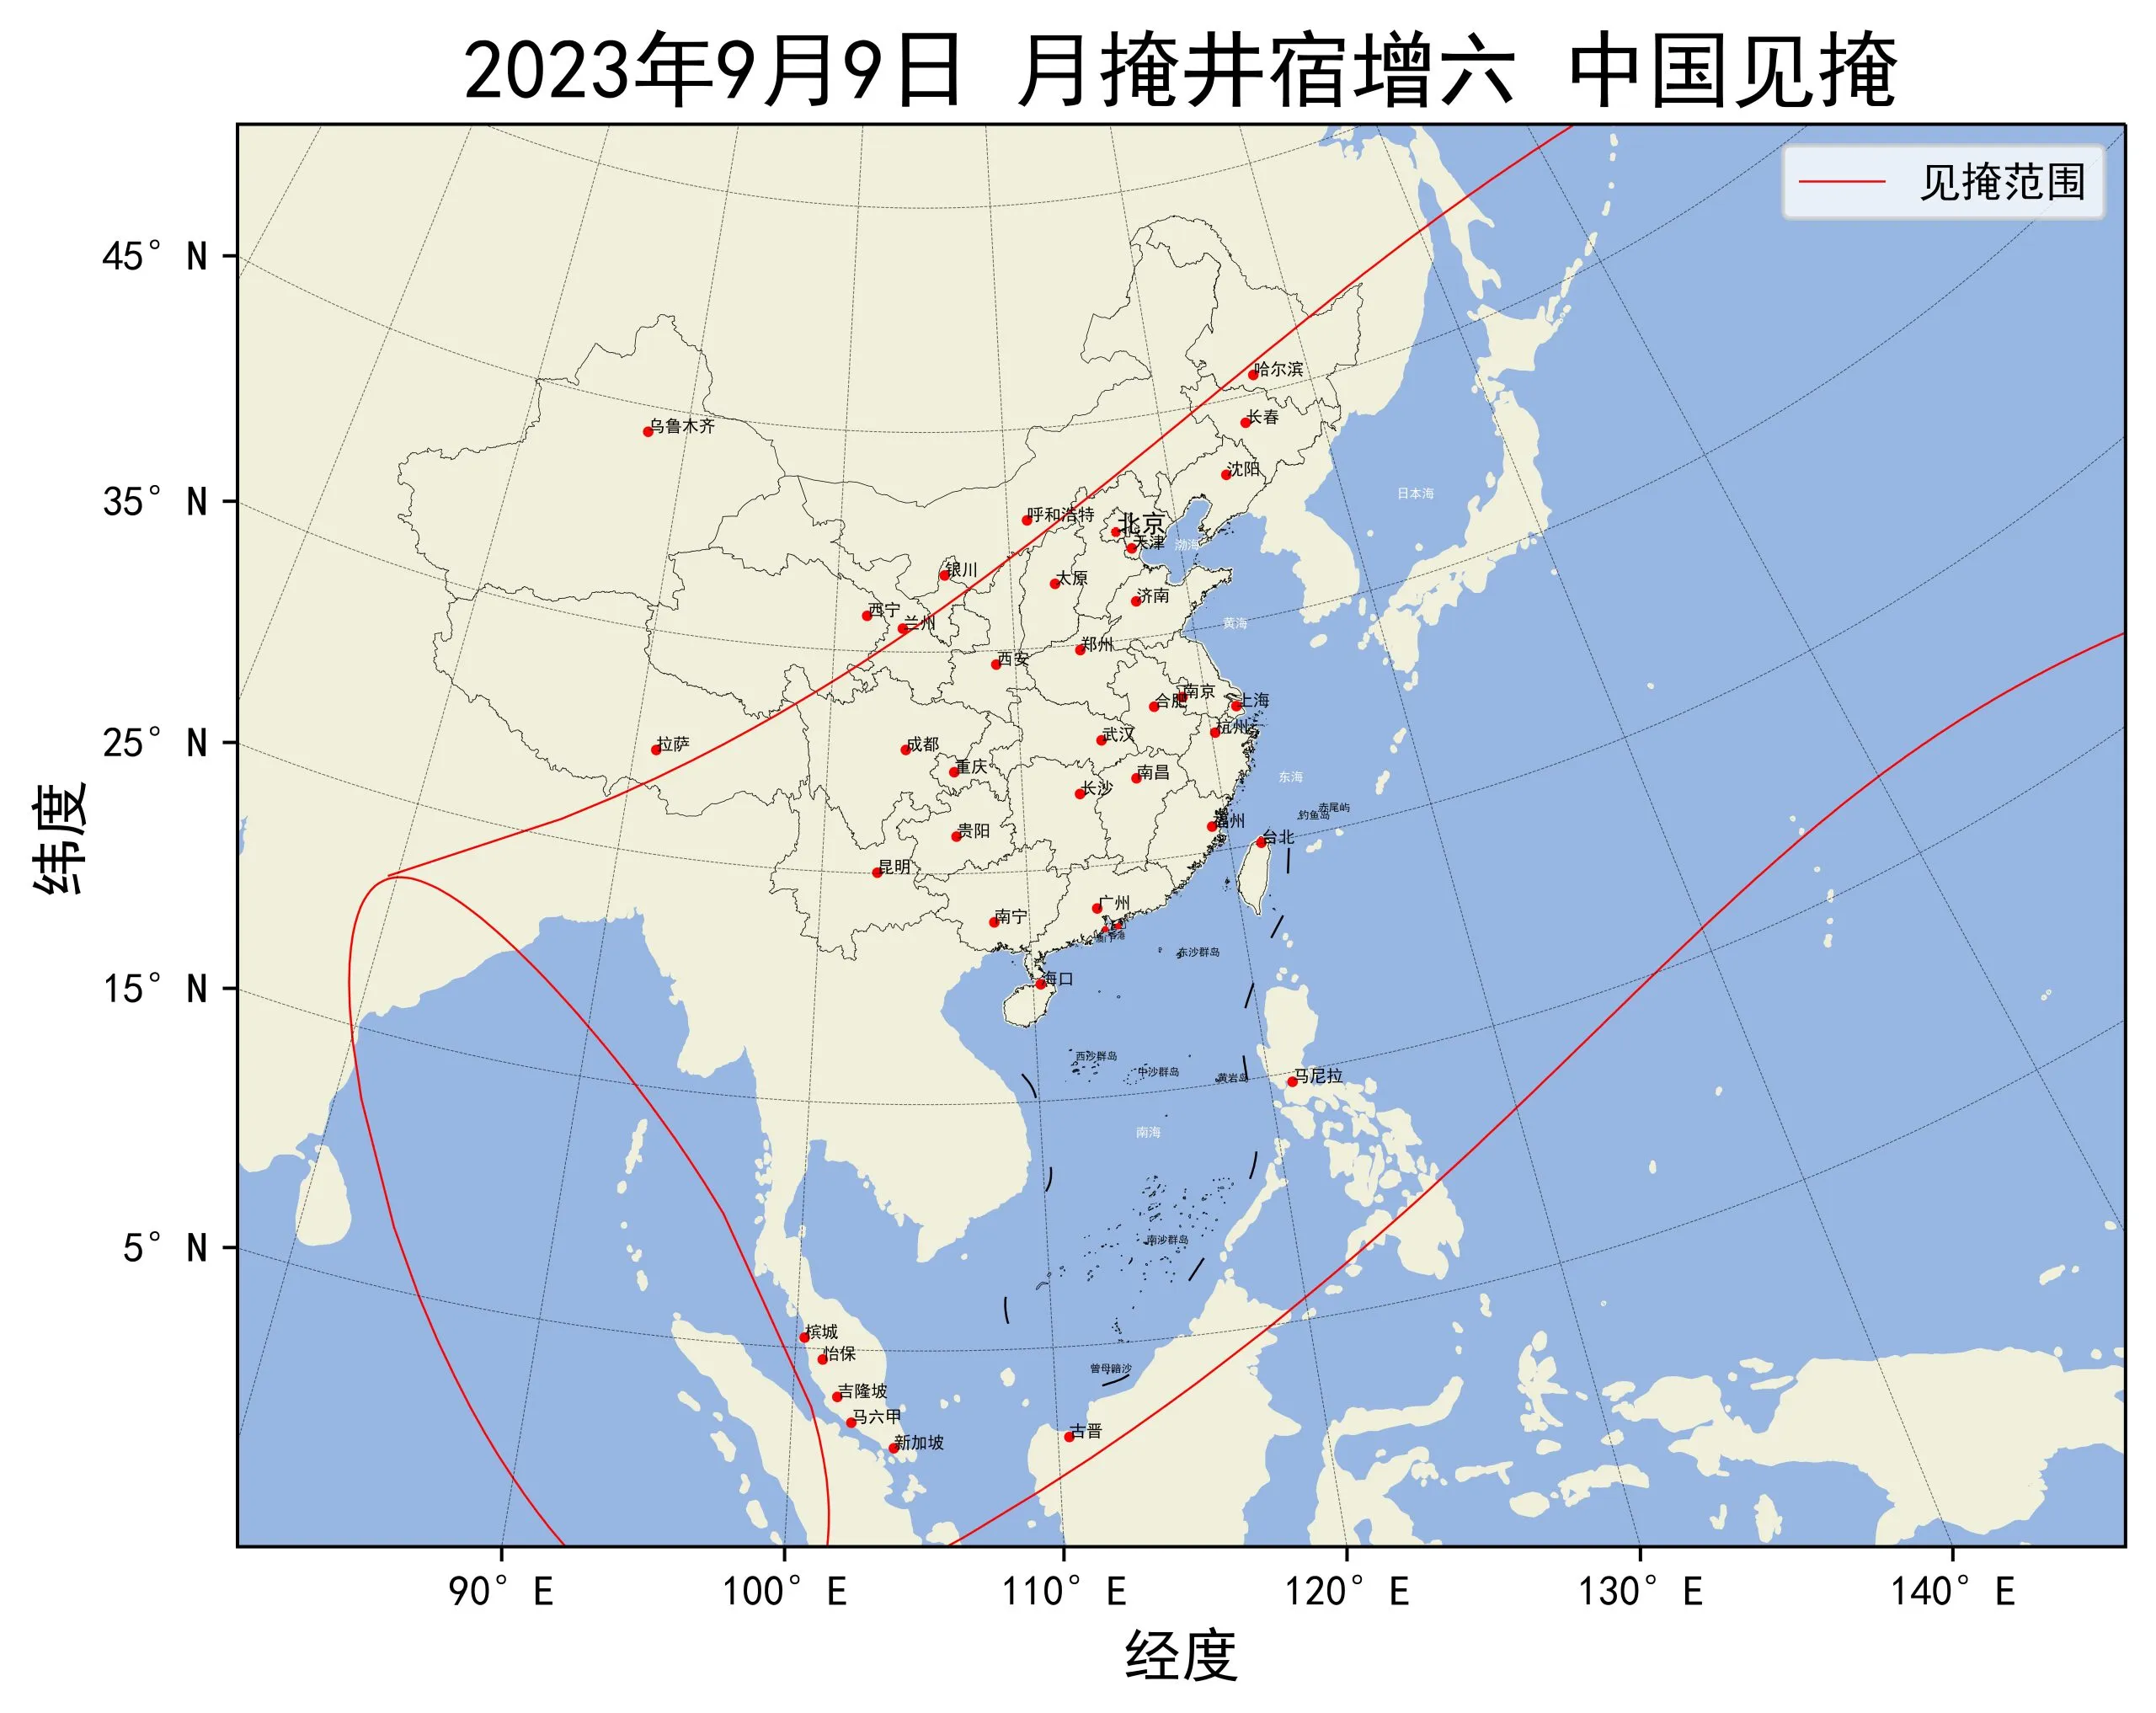 2023年9月9日月掩井宿增六中国见掩